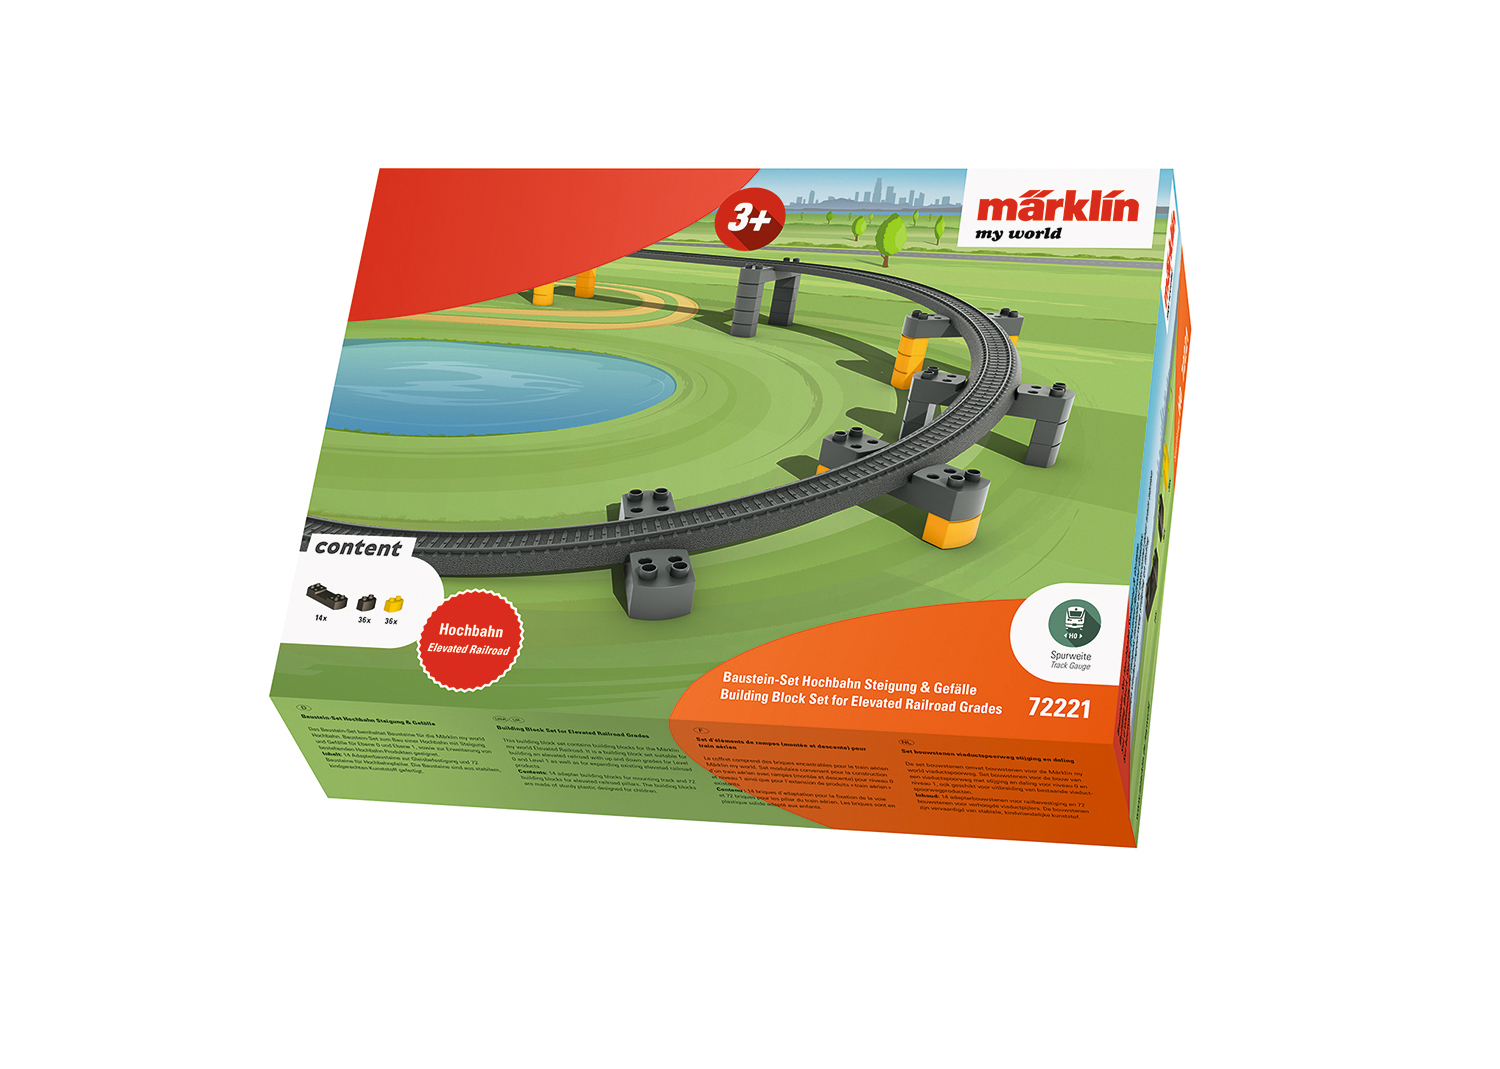 Marklin – Conjunto de 86 piezas de bloques de construcción, marklin my world, Escala H0, Ref: 72221.